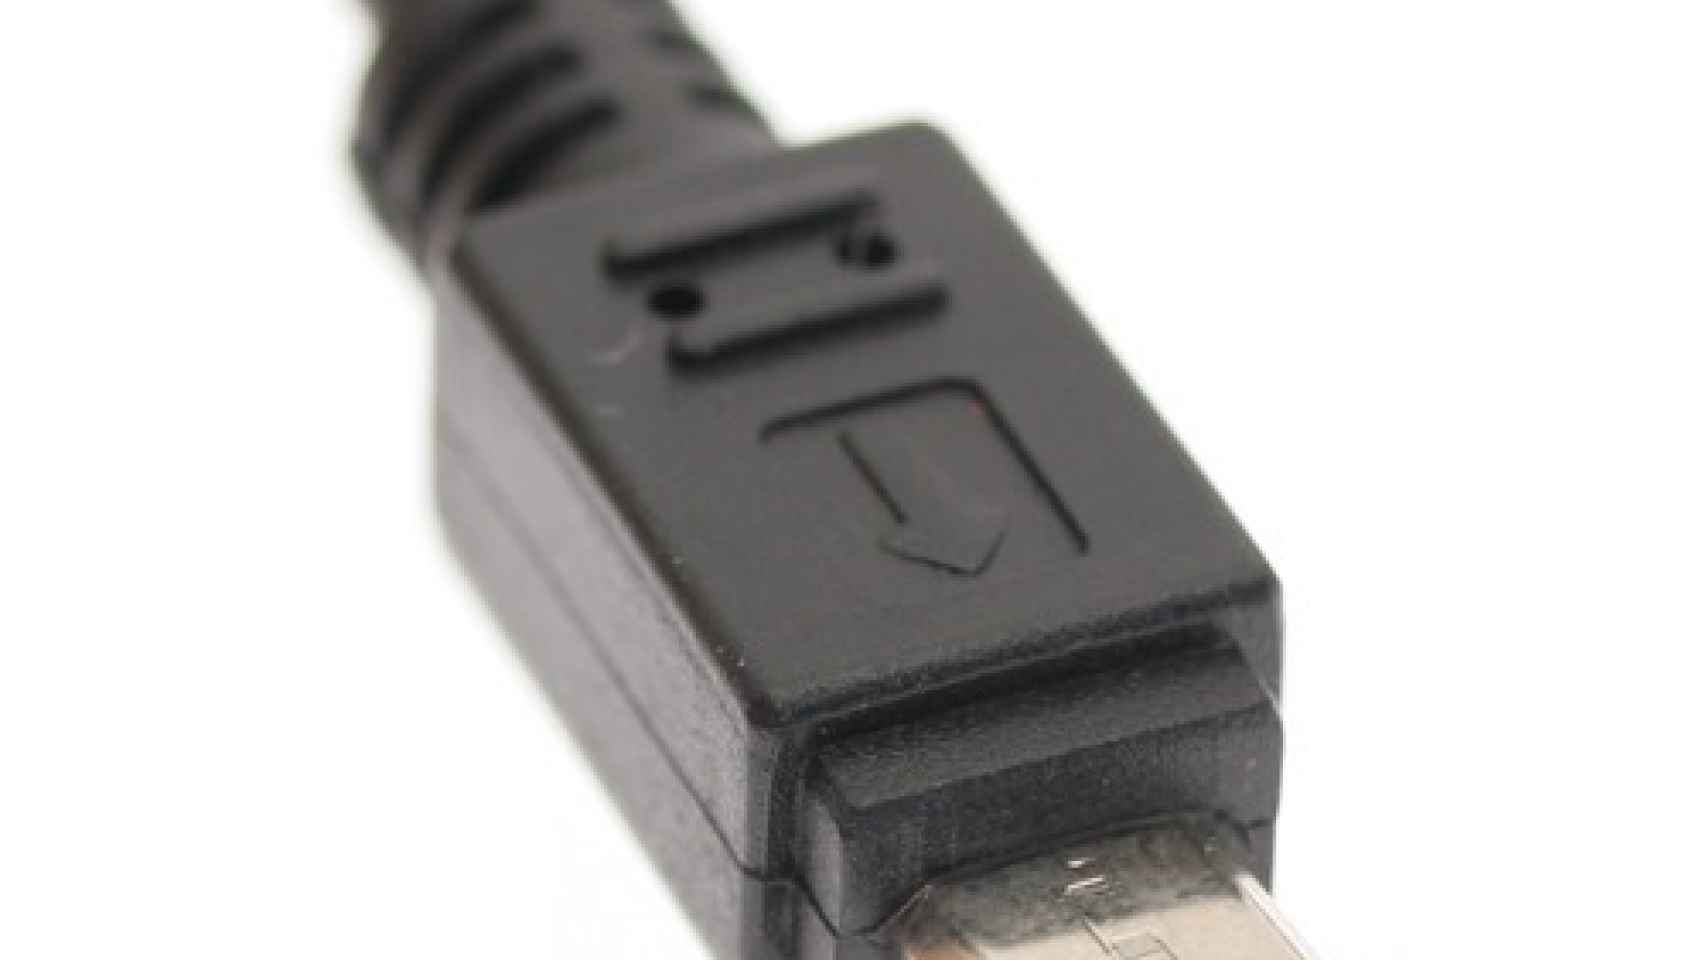 USB 3.1 será el doble de rápido que USB 3.0 y será reversible